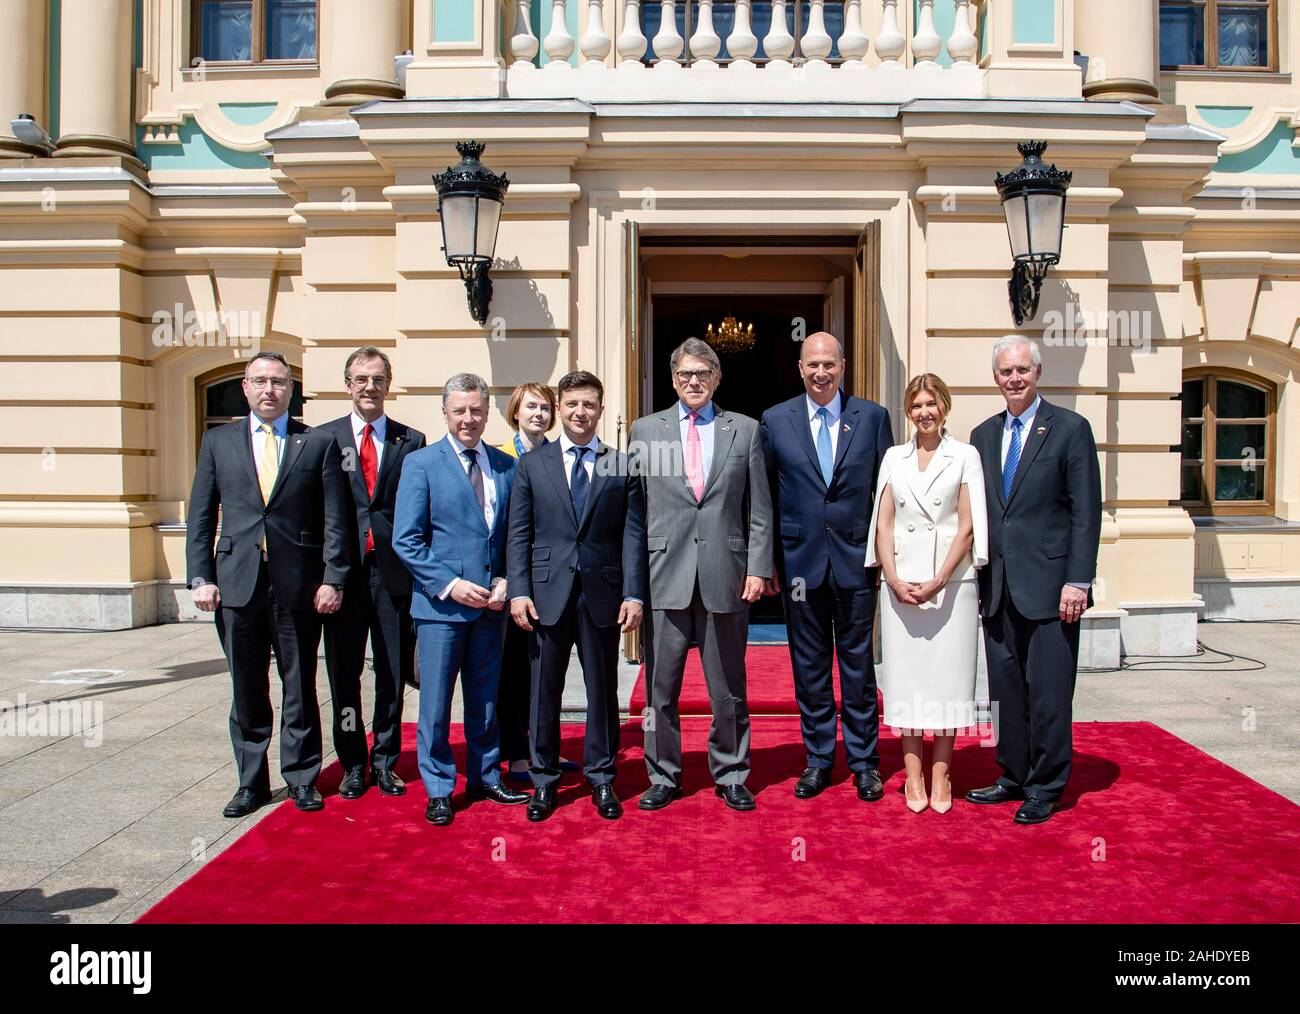 Der Präsident der Ukraine Volodymyr Zelensky, Mitte, posiert für ein Gruppenfoto mit US-Energieminister Rick Perry, US-Amb. zur Europäischen Union Gordon Sondland, und die Mitglieder der Delegation nach seiner Amtseinführung vor dem Präsidentenpalast - 20. Mai 2019 in Kiew, Ukraine. Stockfoto